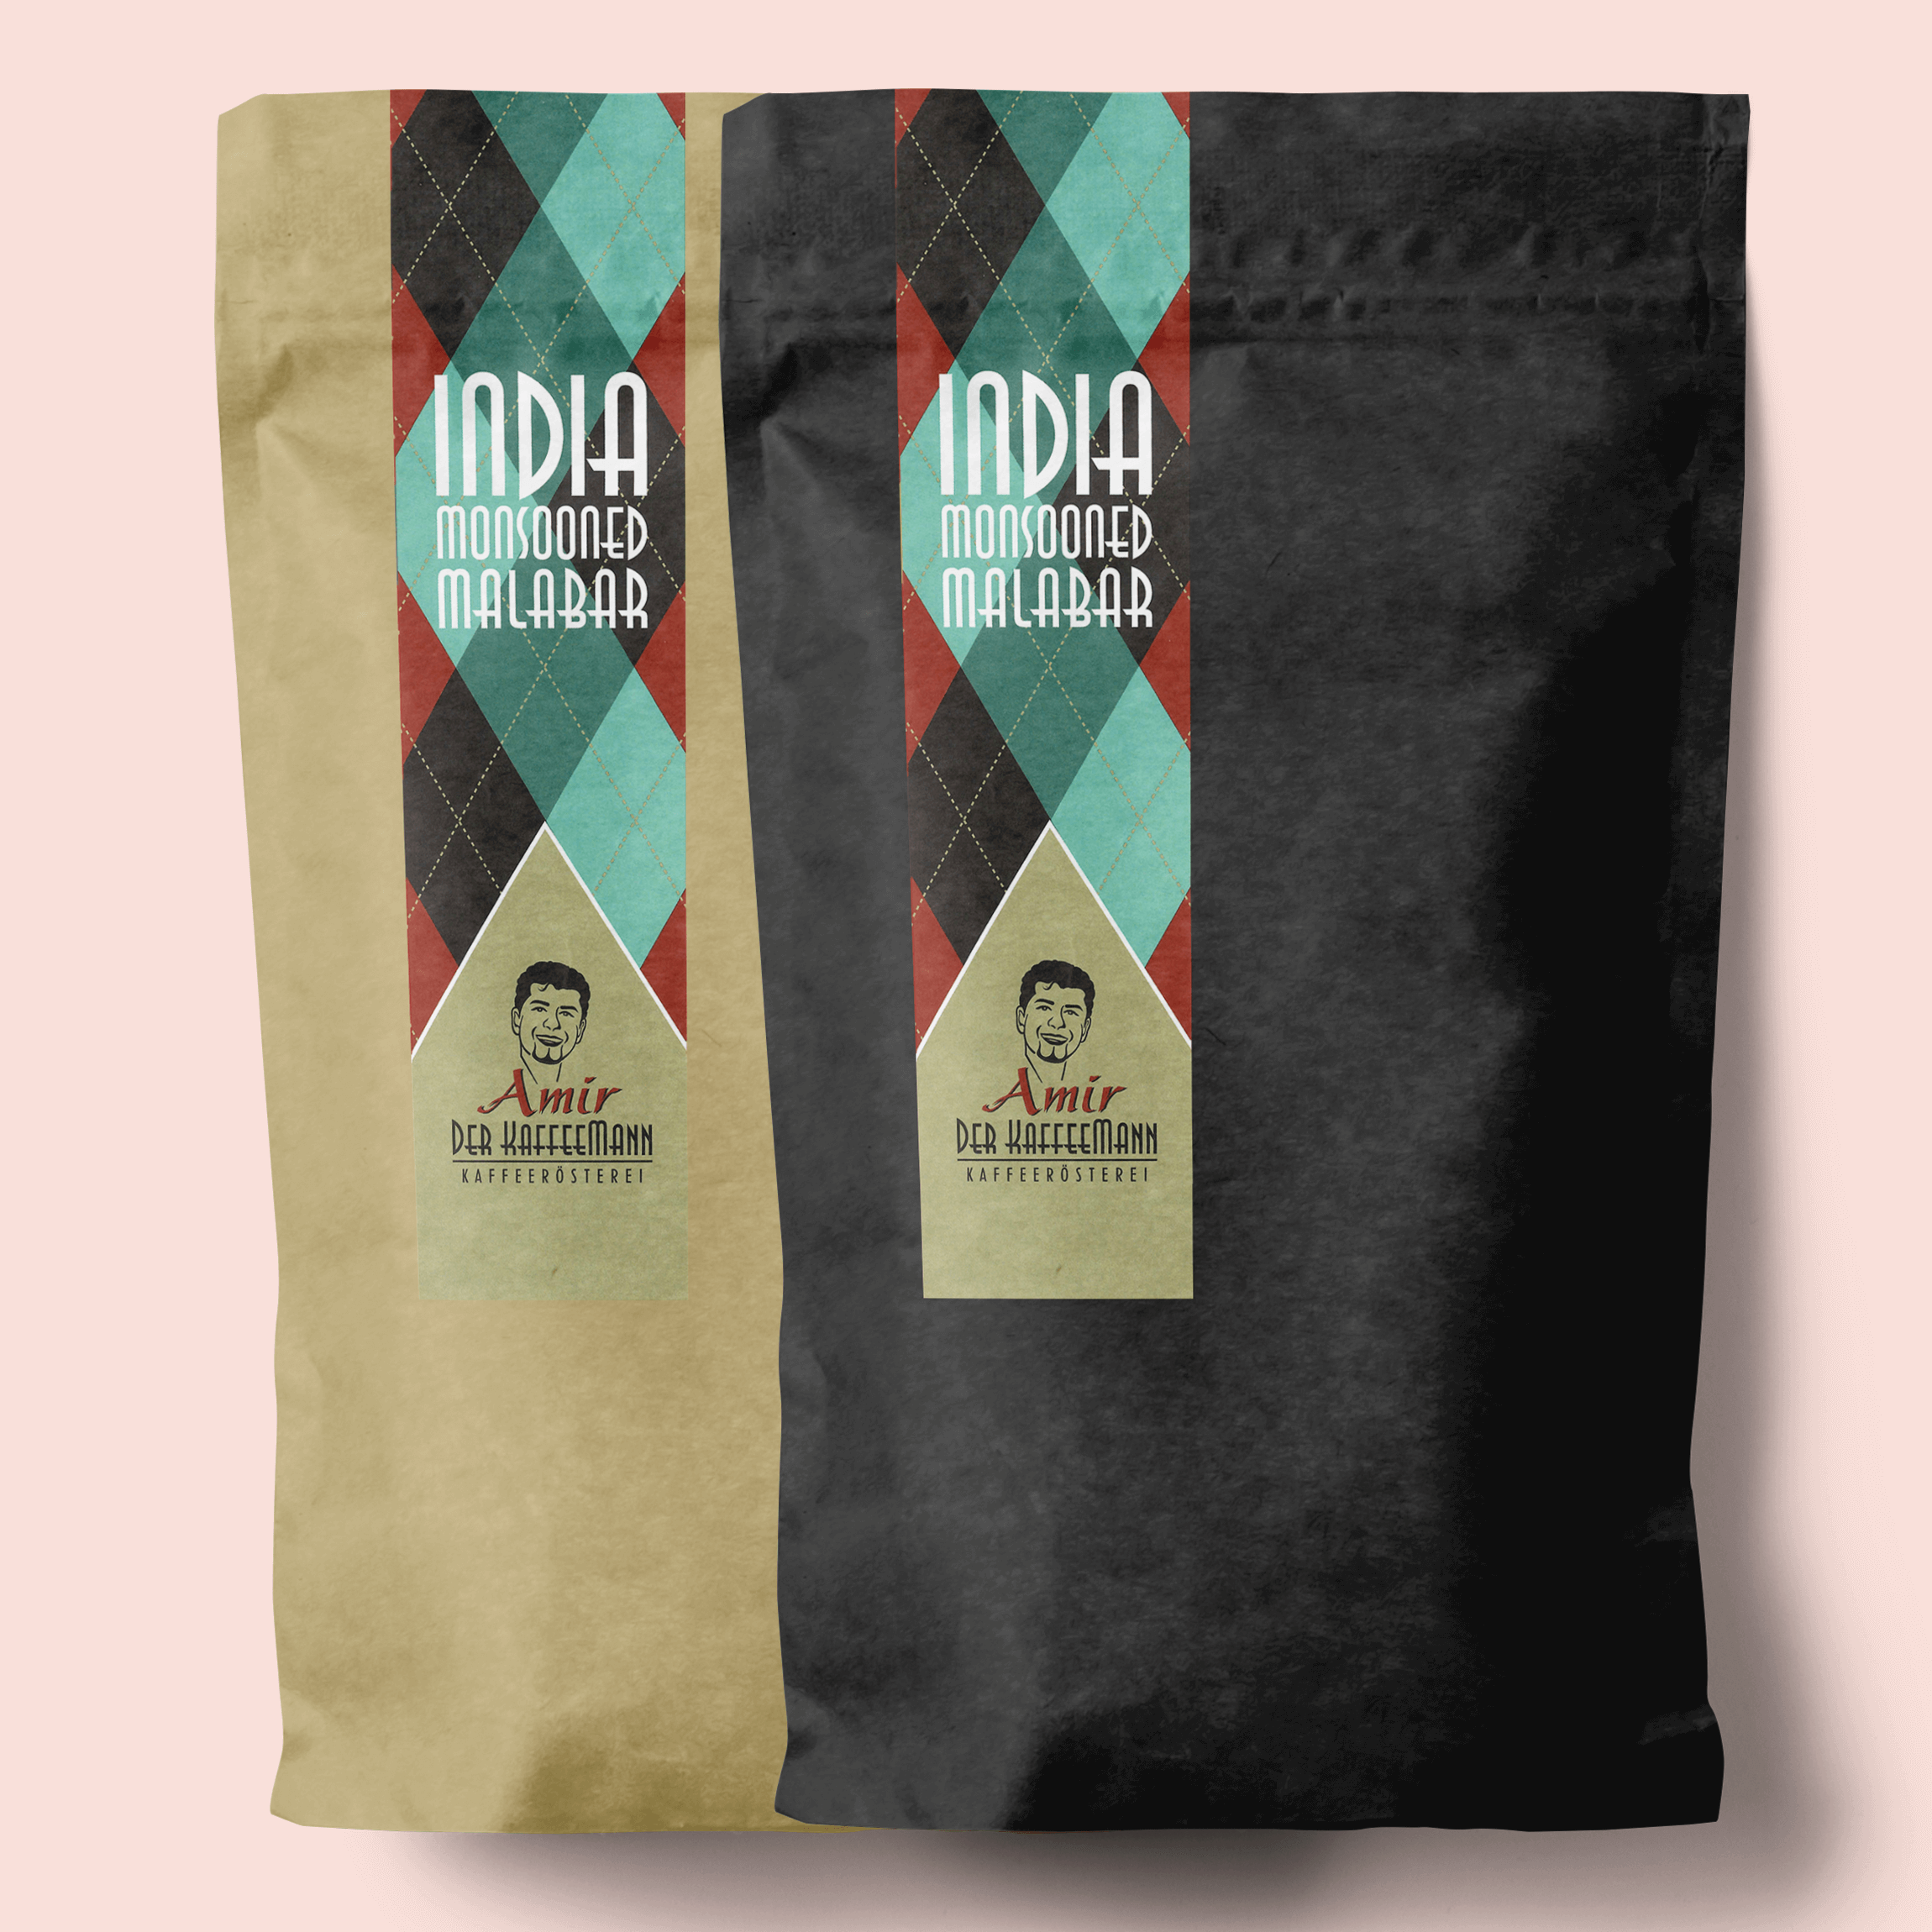 Verpackter India Monsooned Malabar Kaffee mit sichtbarem Label, das Qualität und Herkunft hervorhebt.